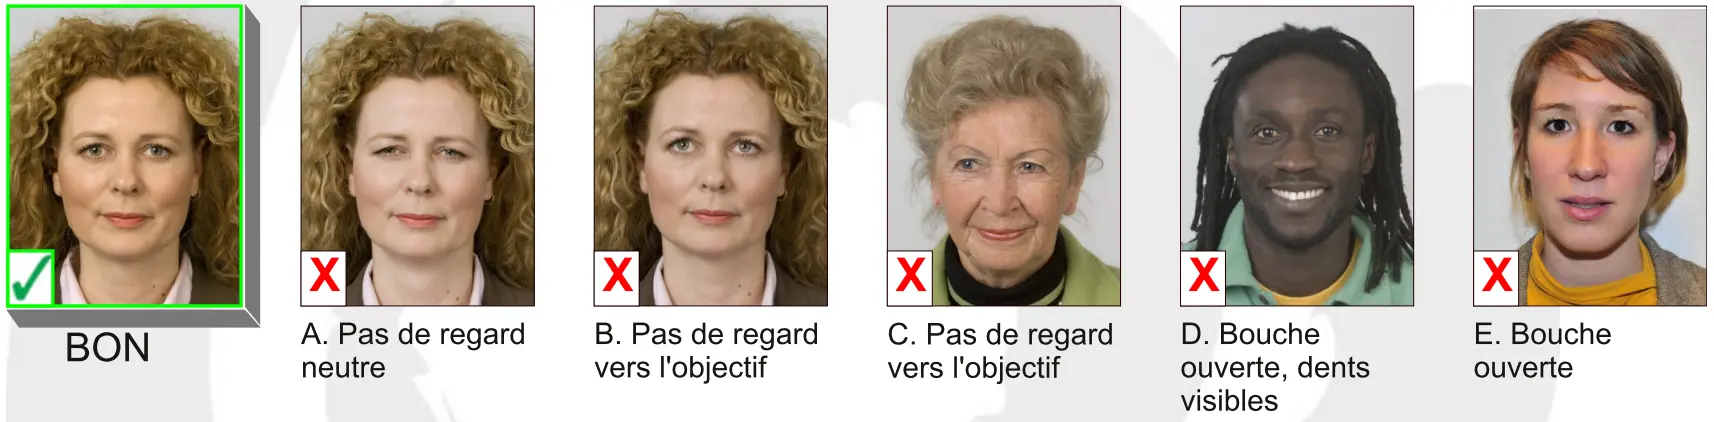 Belgium passport photo